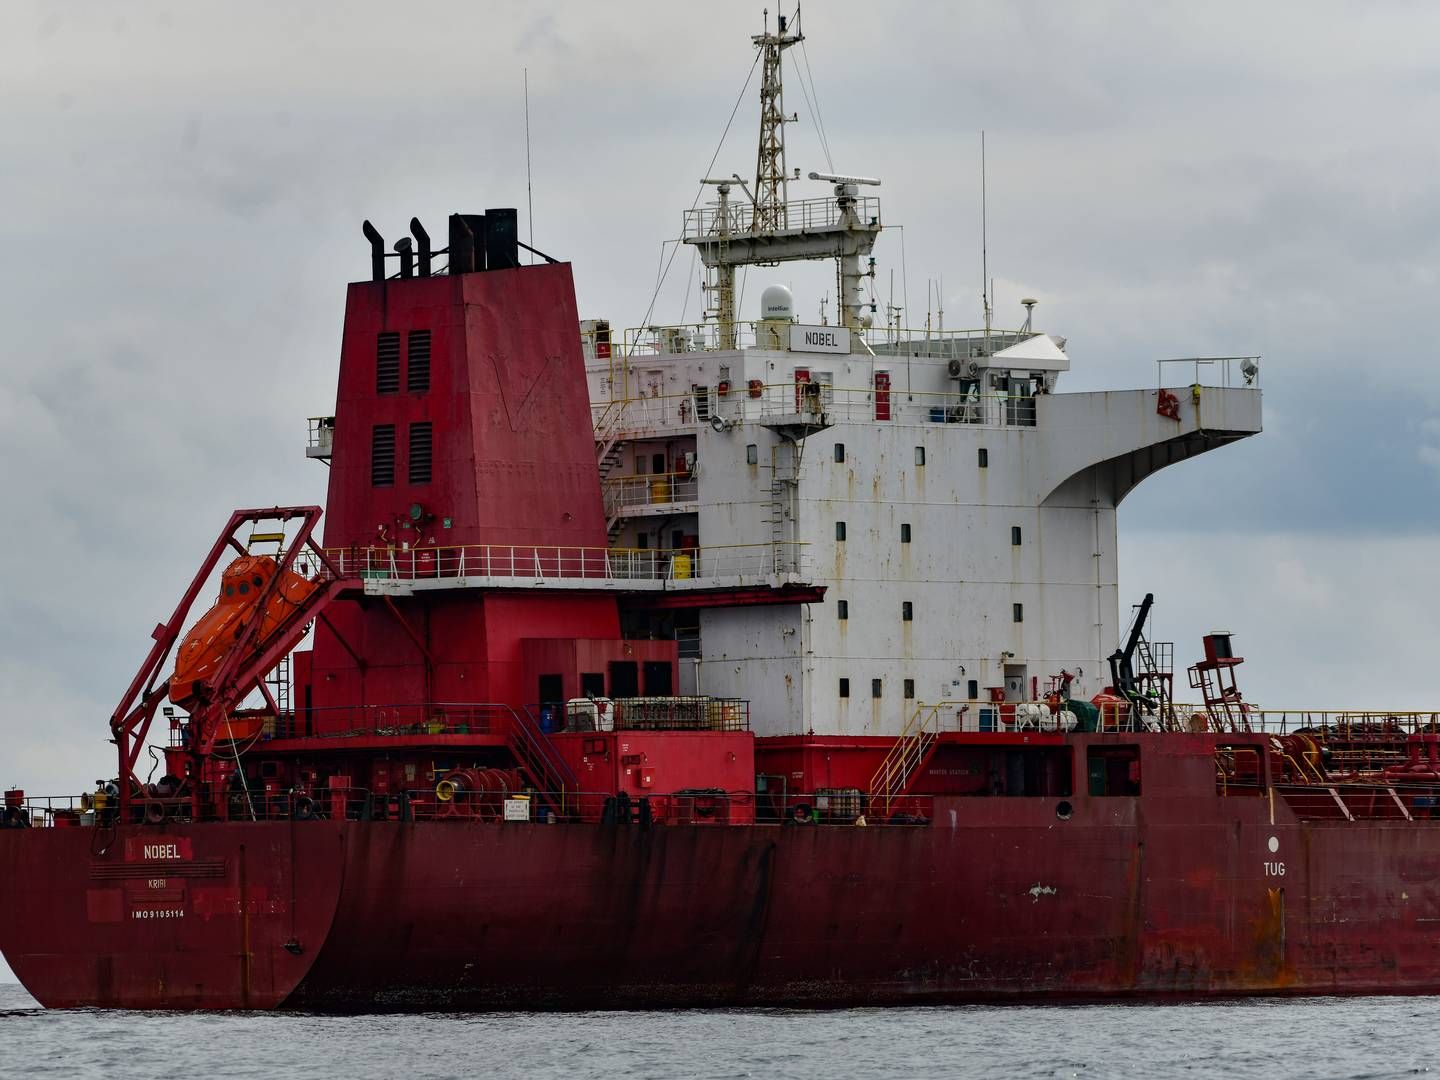 Olielækket fandt sted i havnen i Ceuta, der ligger i Nordafrika. Det er blevet kaldt ”det største udslip i Ceutas farvande i historien”. Skibet på billedet er ikke det tankskib, der er involveret i olielækket i Ceuta. | Foto: Antonio Sempere/AP/Ritzau Scanpix